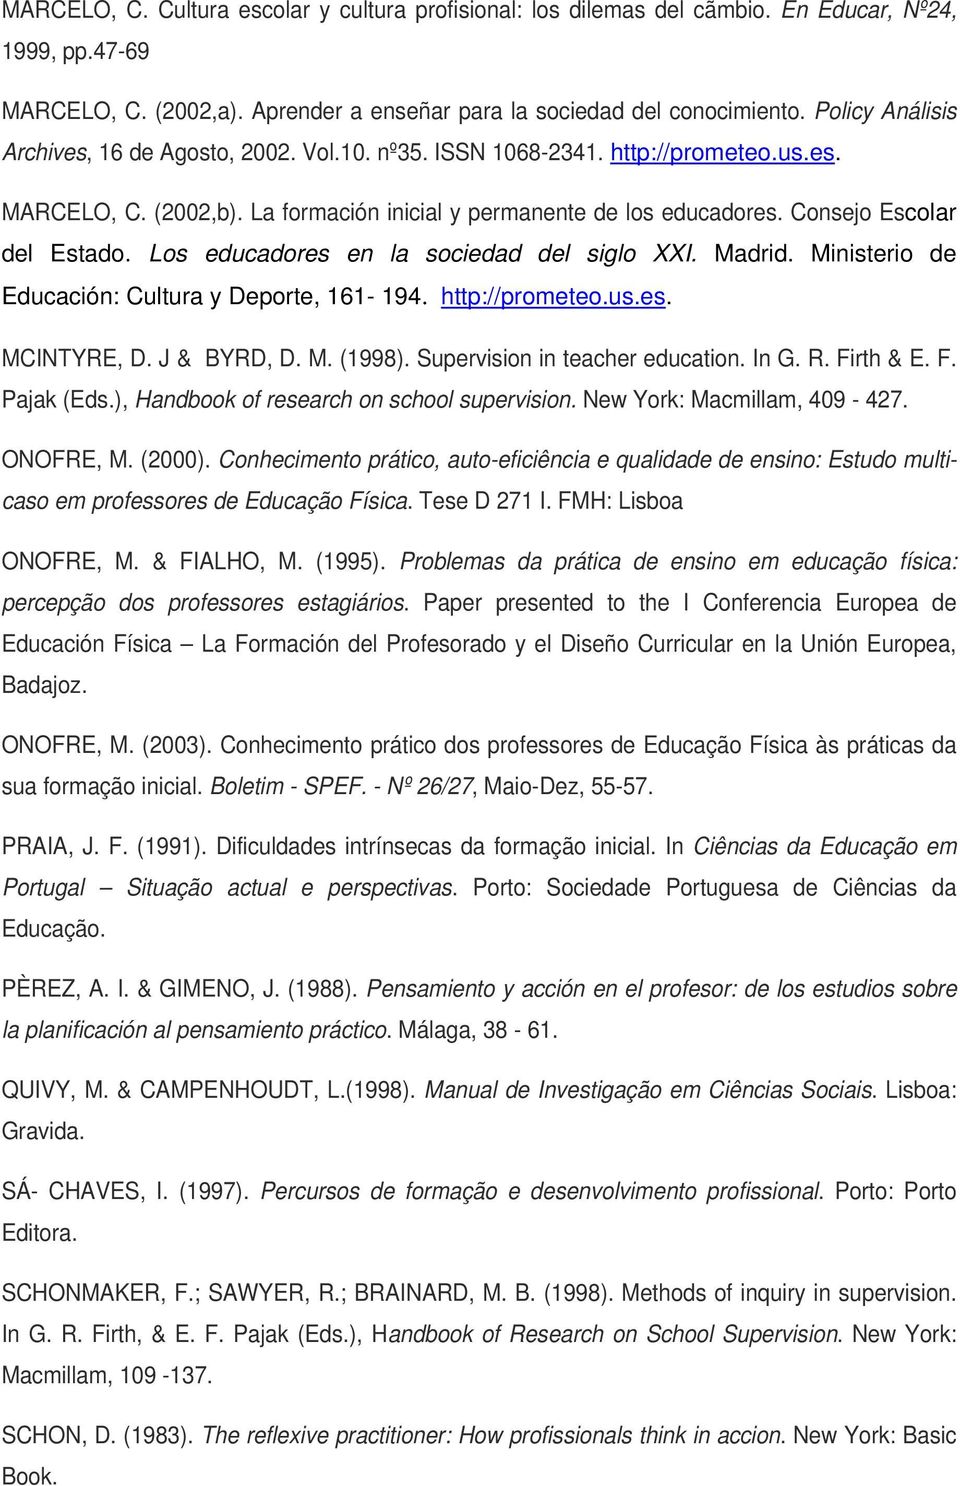 Consejo Escolar del Estado. Los educadores en la sociedad del siglo XXI. Madrid. Ministerio de Educación: Cultura y Deporte, 161-194. http://prometeo.us.es. MCINTYRE, D. J & BYRD, D. M. (1998).